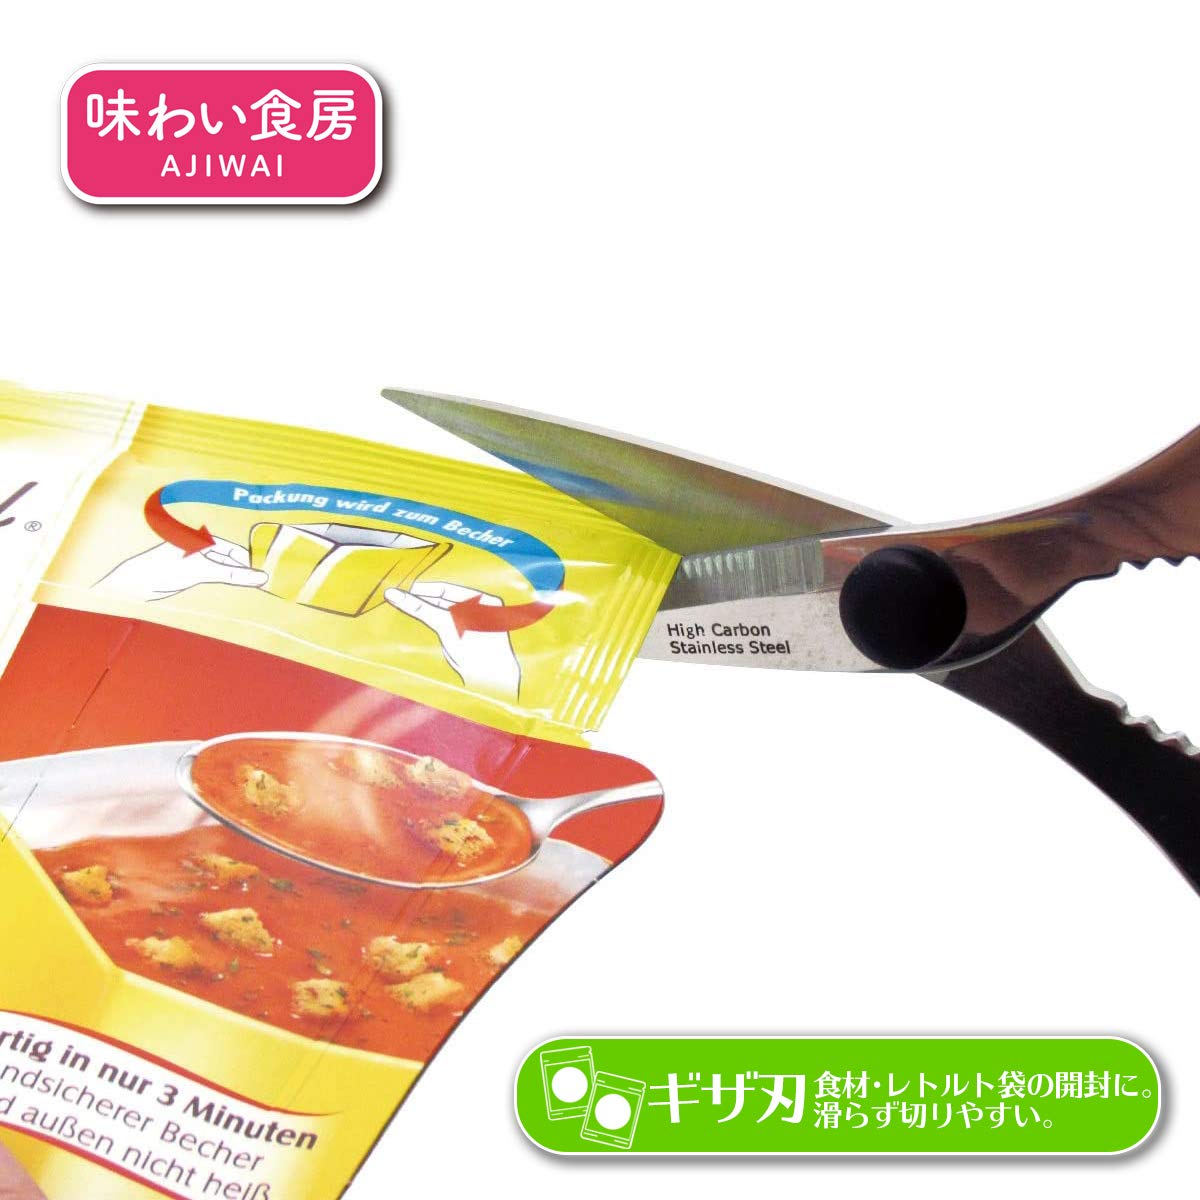 Shimomura Kogyo Soft Grip Kitchen Scissors Ash-407